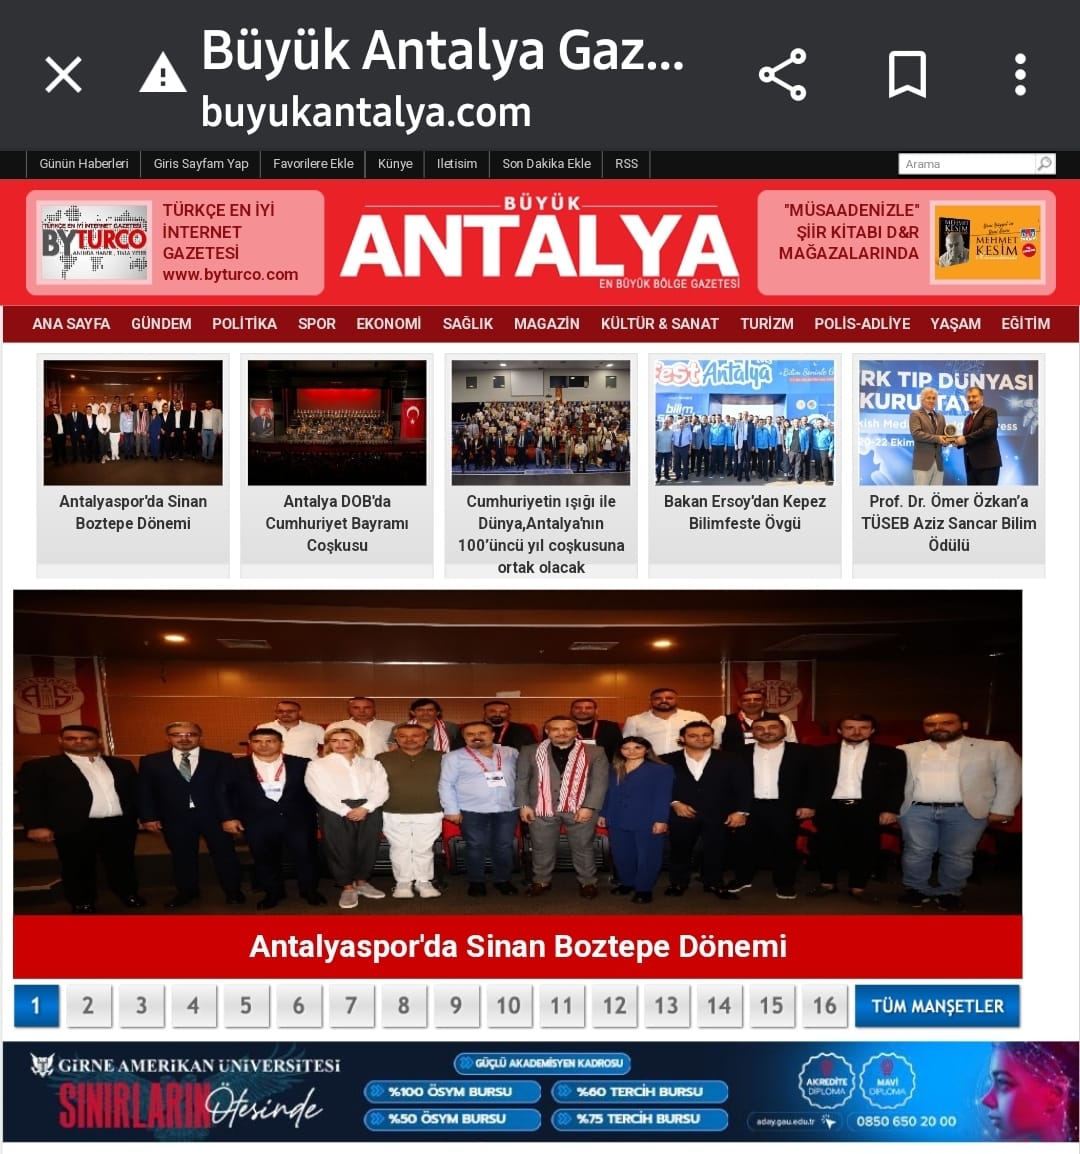 Bize Hayırlı Olsun Demek Yakışır ...
Antalyaspor'da Boztepe Dönemi 
buyukantalya.com 
buyukantalya.com/haber/8203-Ant… #bizantalyasporuz #sinanboztepe #Büyükanyalyagazetesi